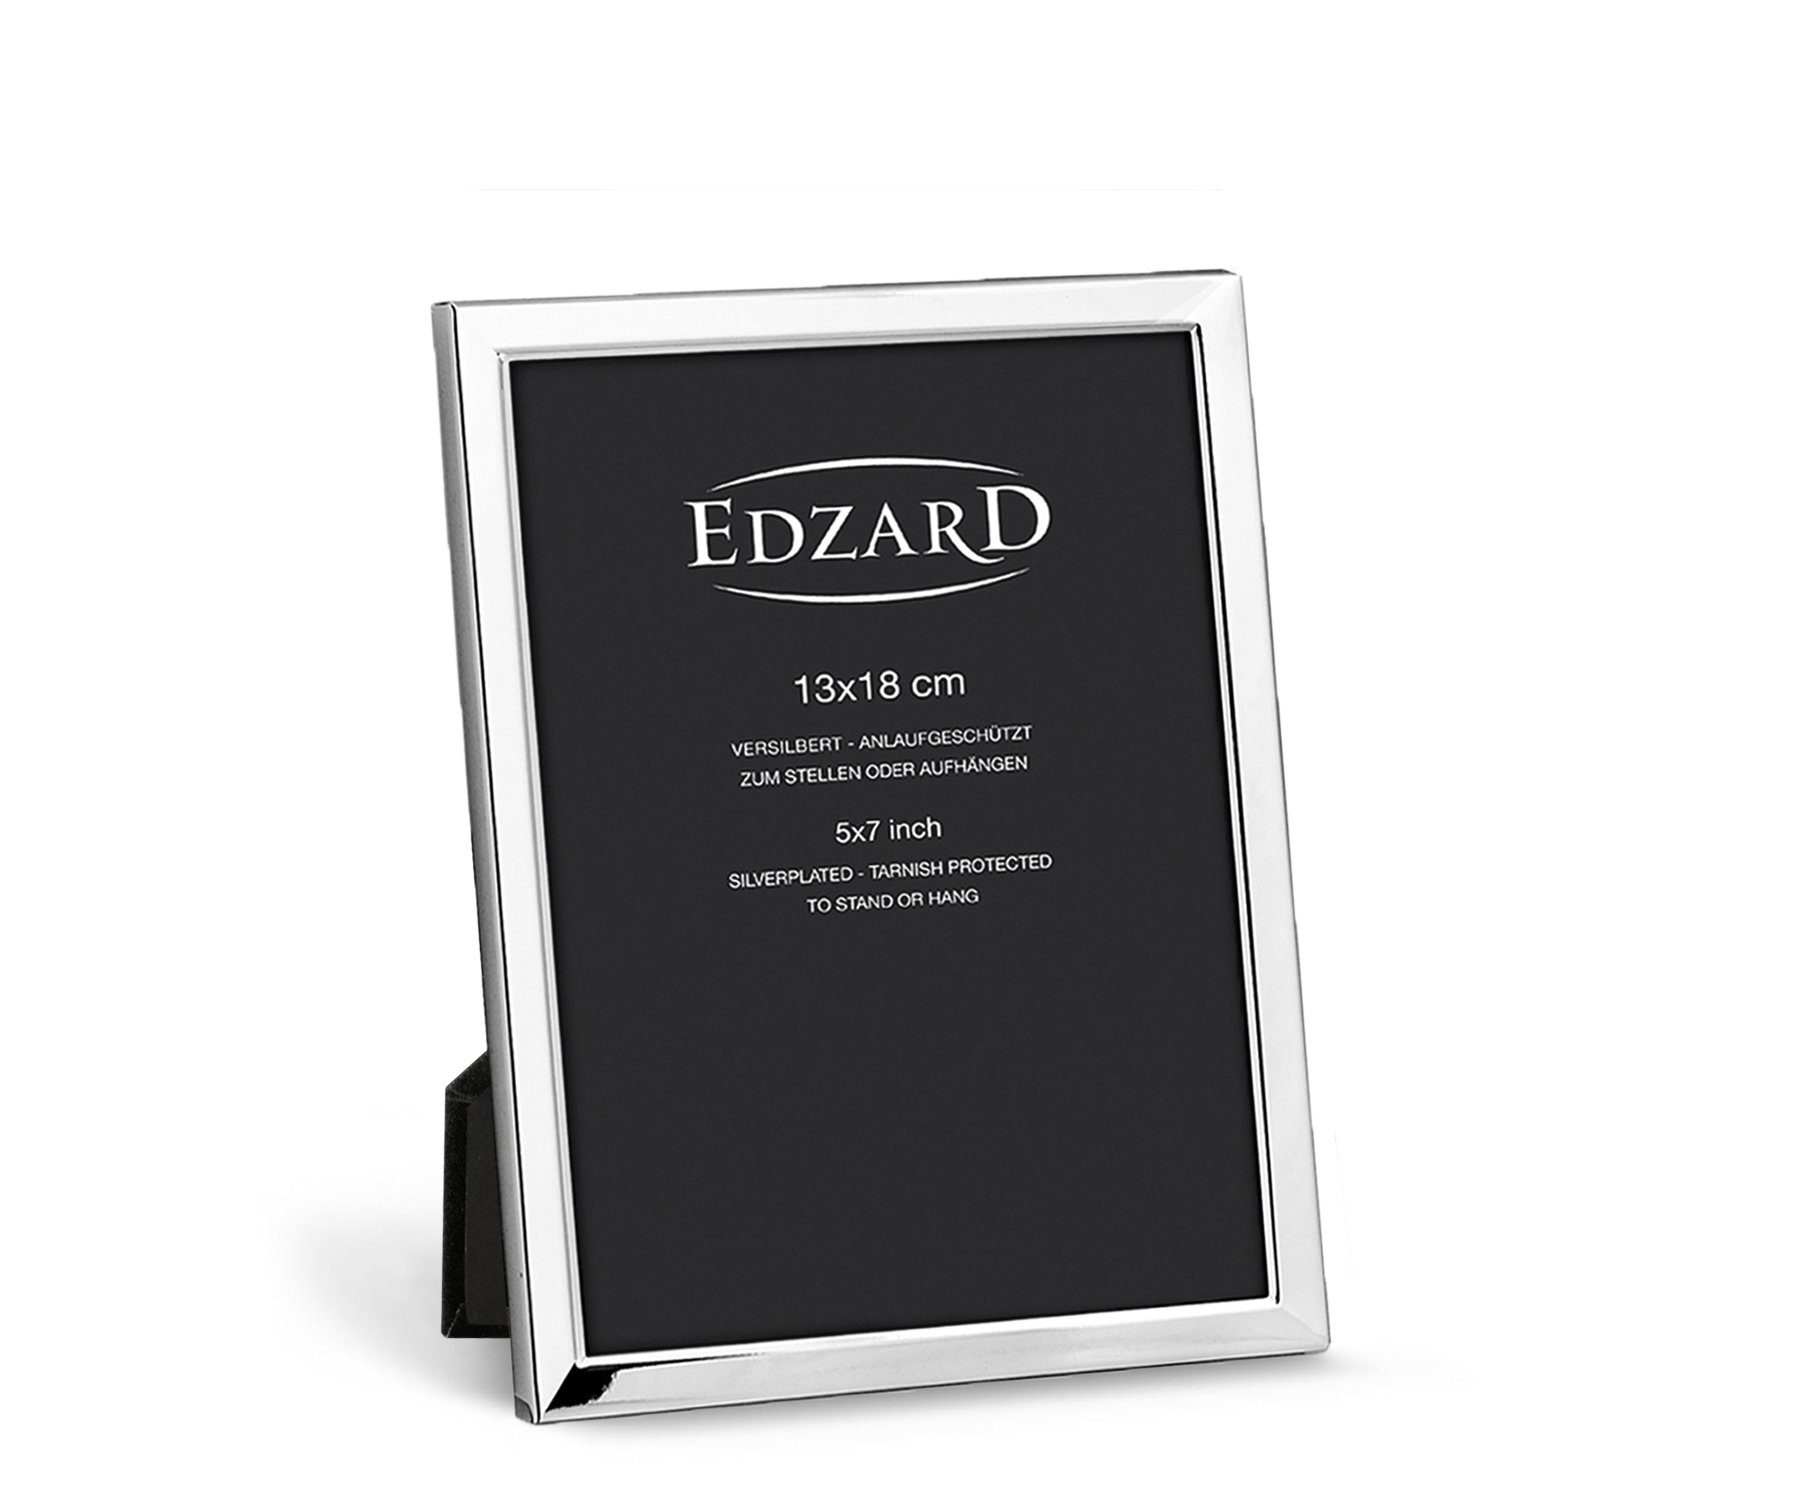 EDZARD Bilderrahmen Bergamo, versilbert und anlaufgeschützt, für 13x18 cm Bilder - Fotorahmen